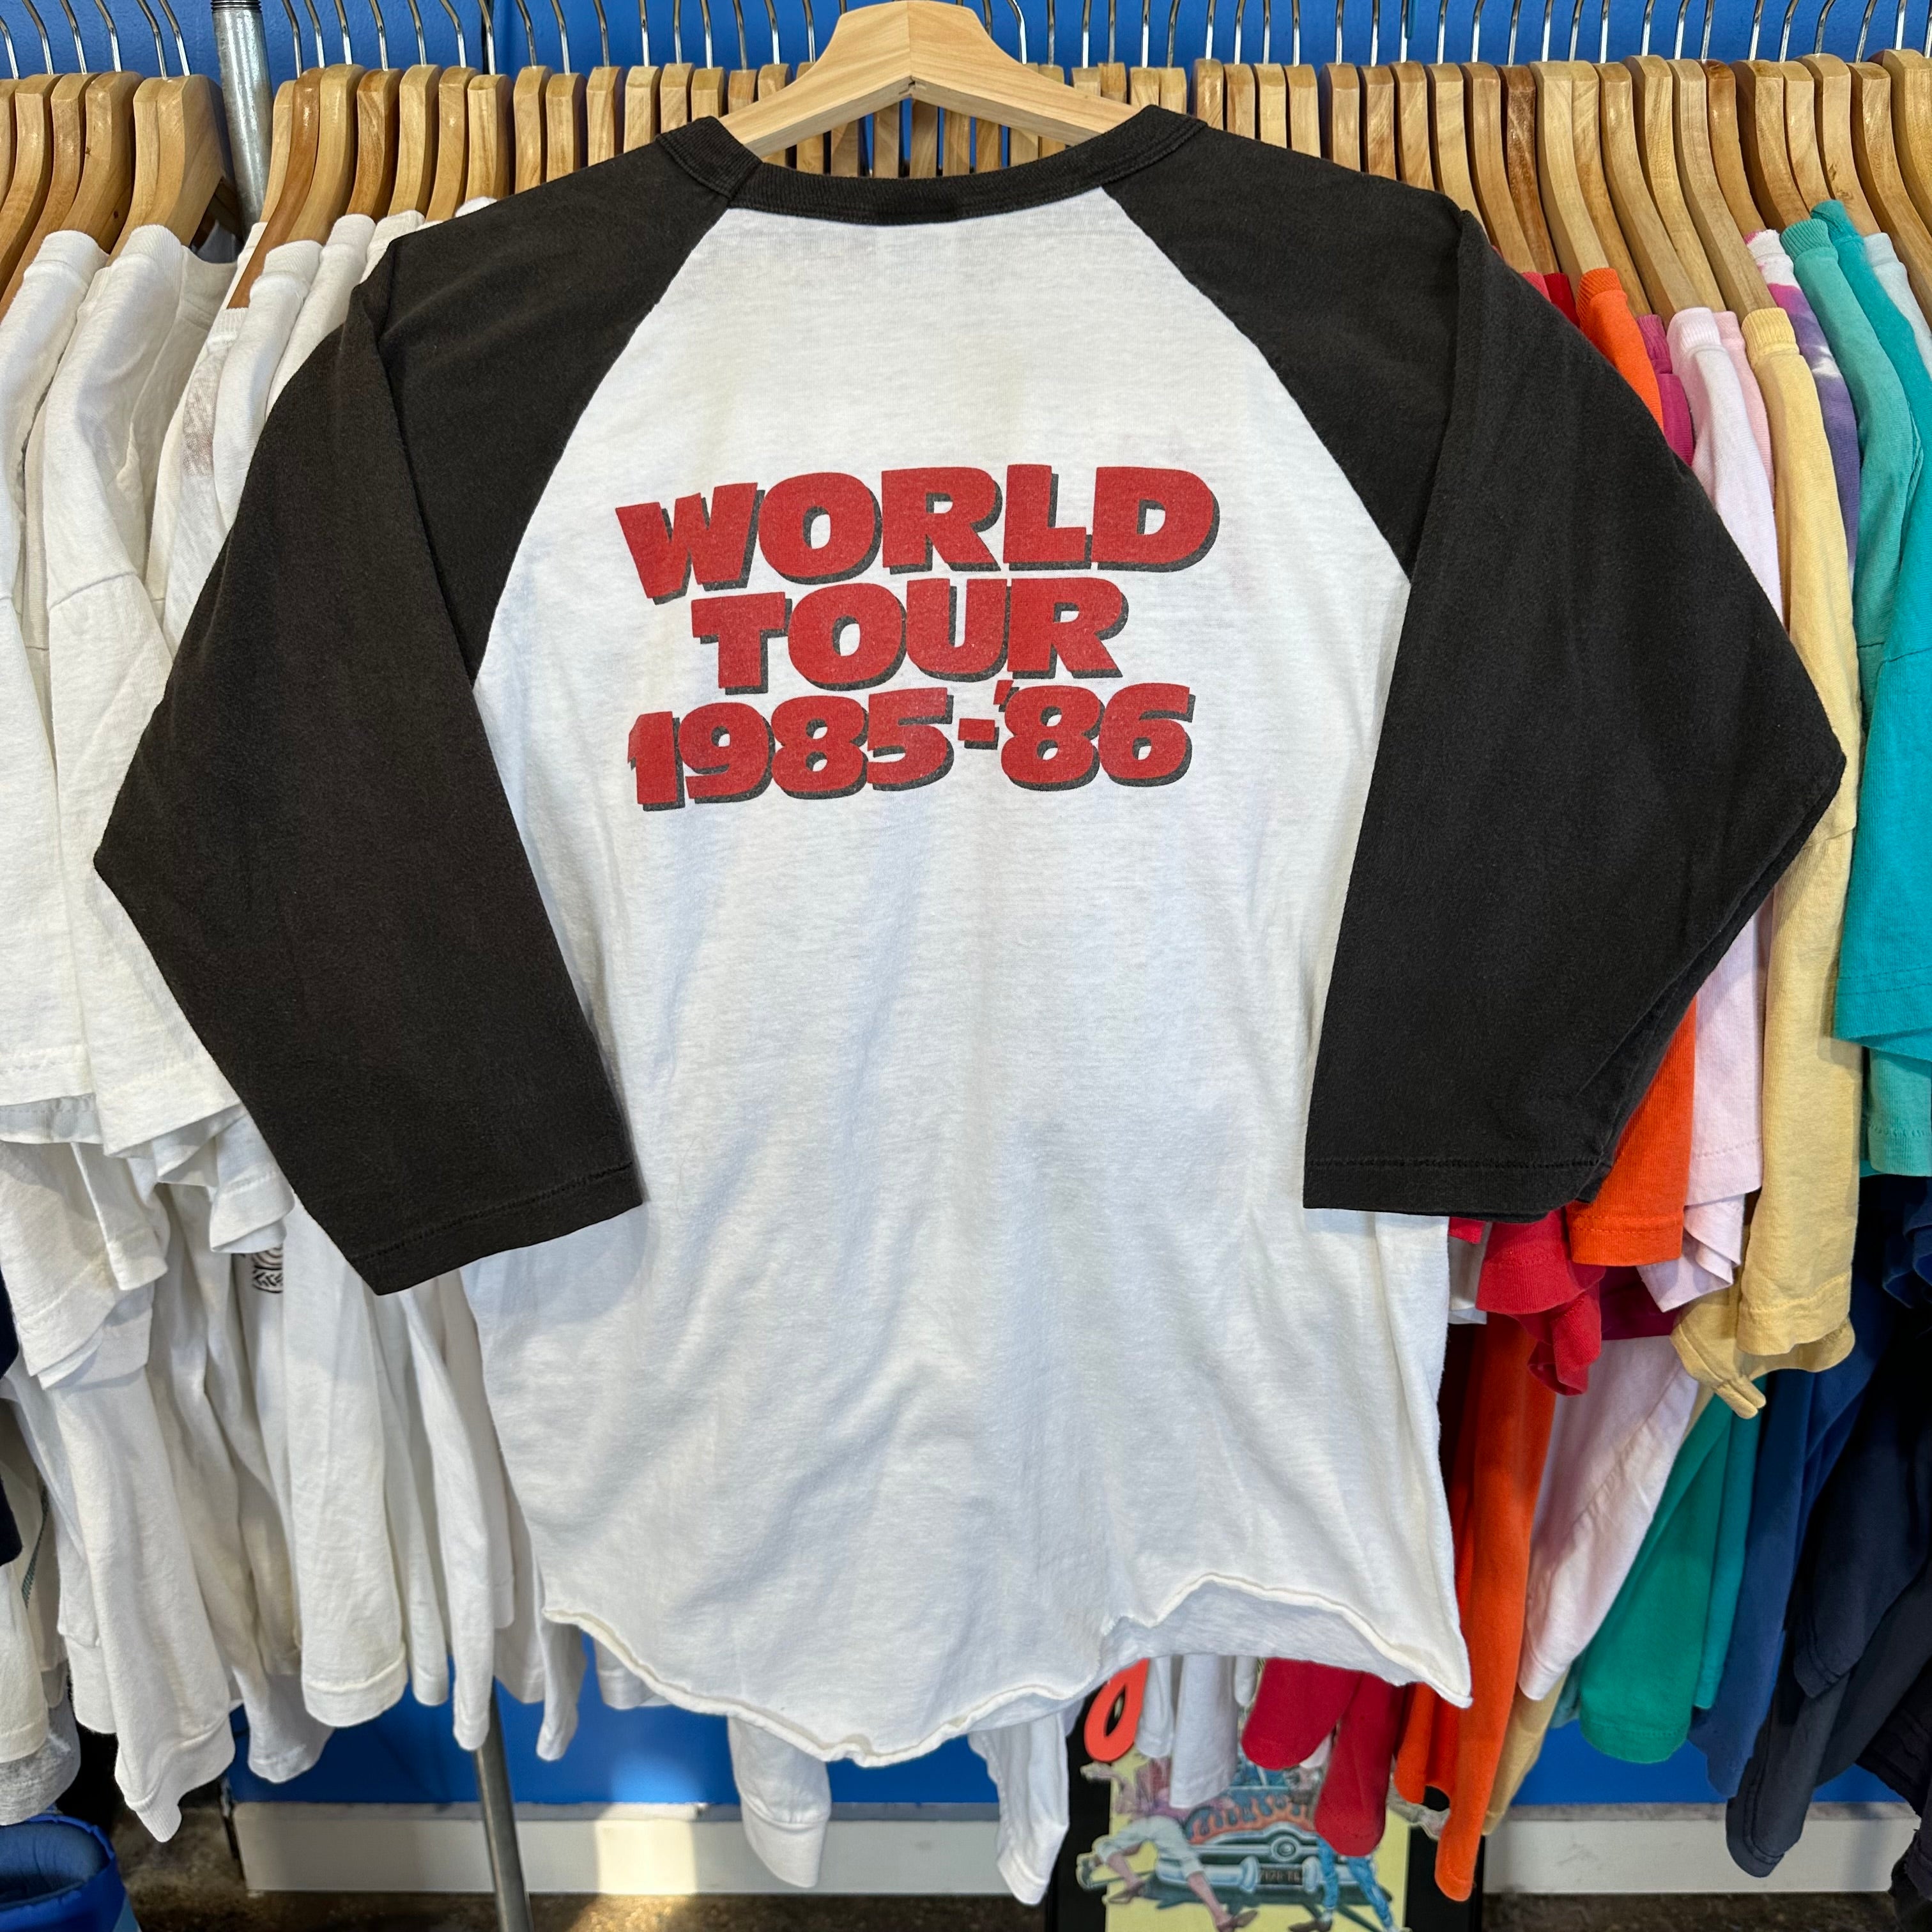 Heart ‘85-‘86 Tour T-Shirt